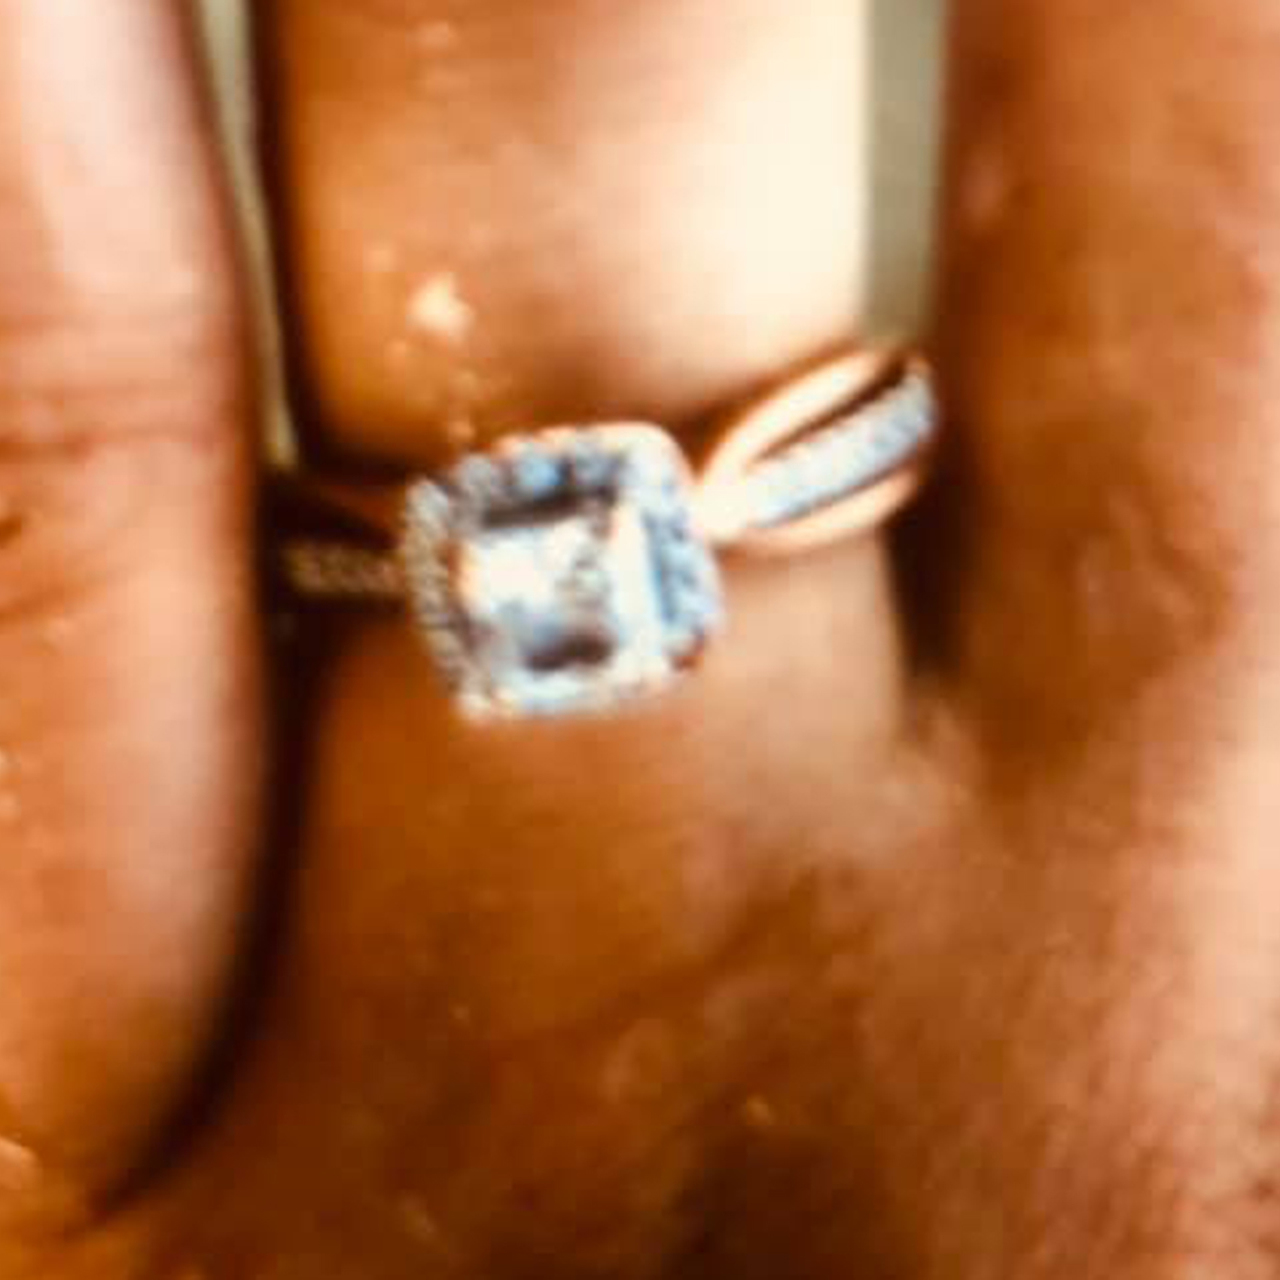 Потерянное обручальное кольцо нашли надетым на рыбку